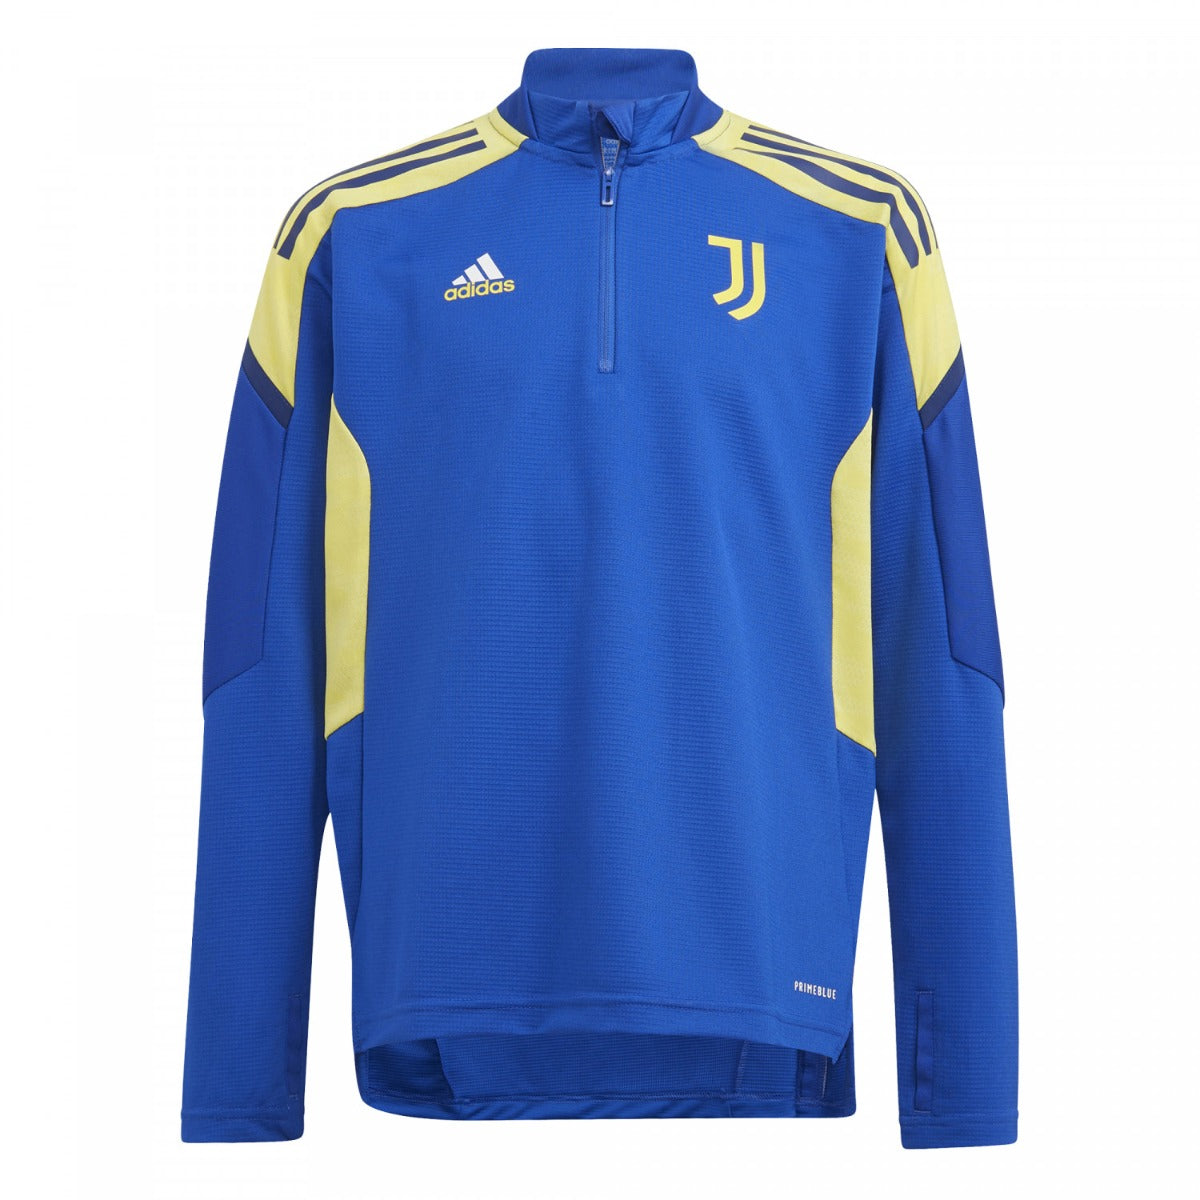 Juventus Europe Junior 2021/2022 training top - Blue/Yellow